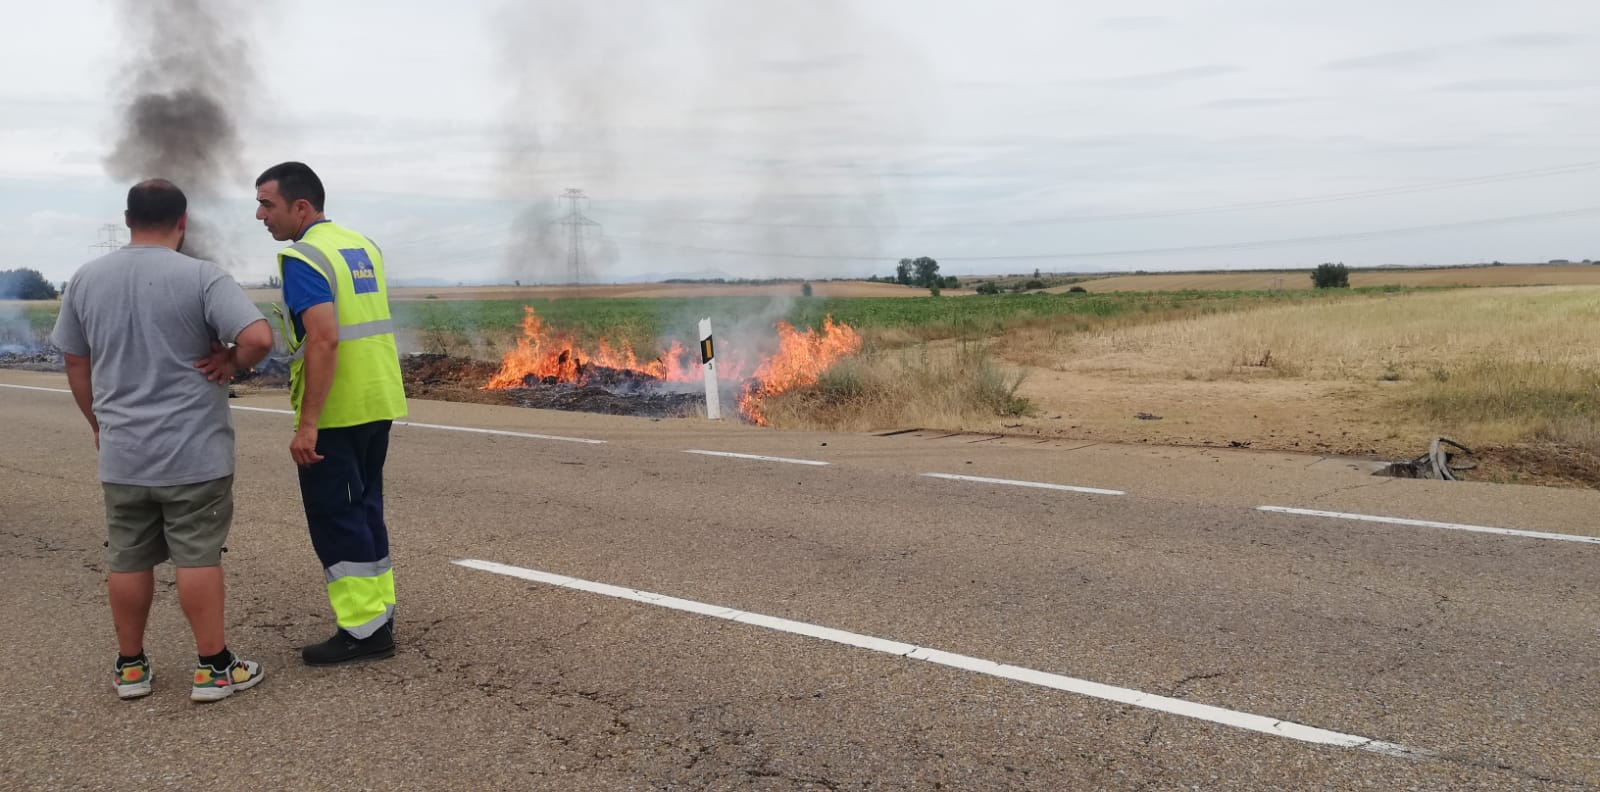 Fotos: El fuego devora un vehículo tras una salida de vía en la N-601 y su conductor resultado herido